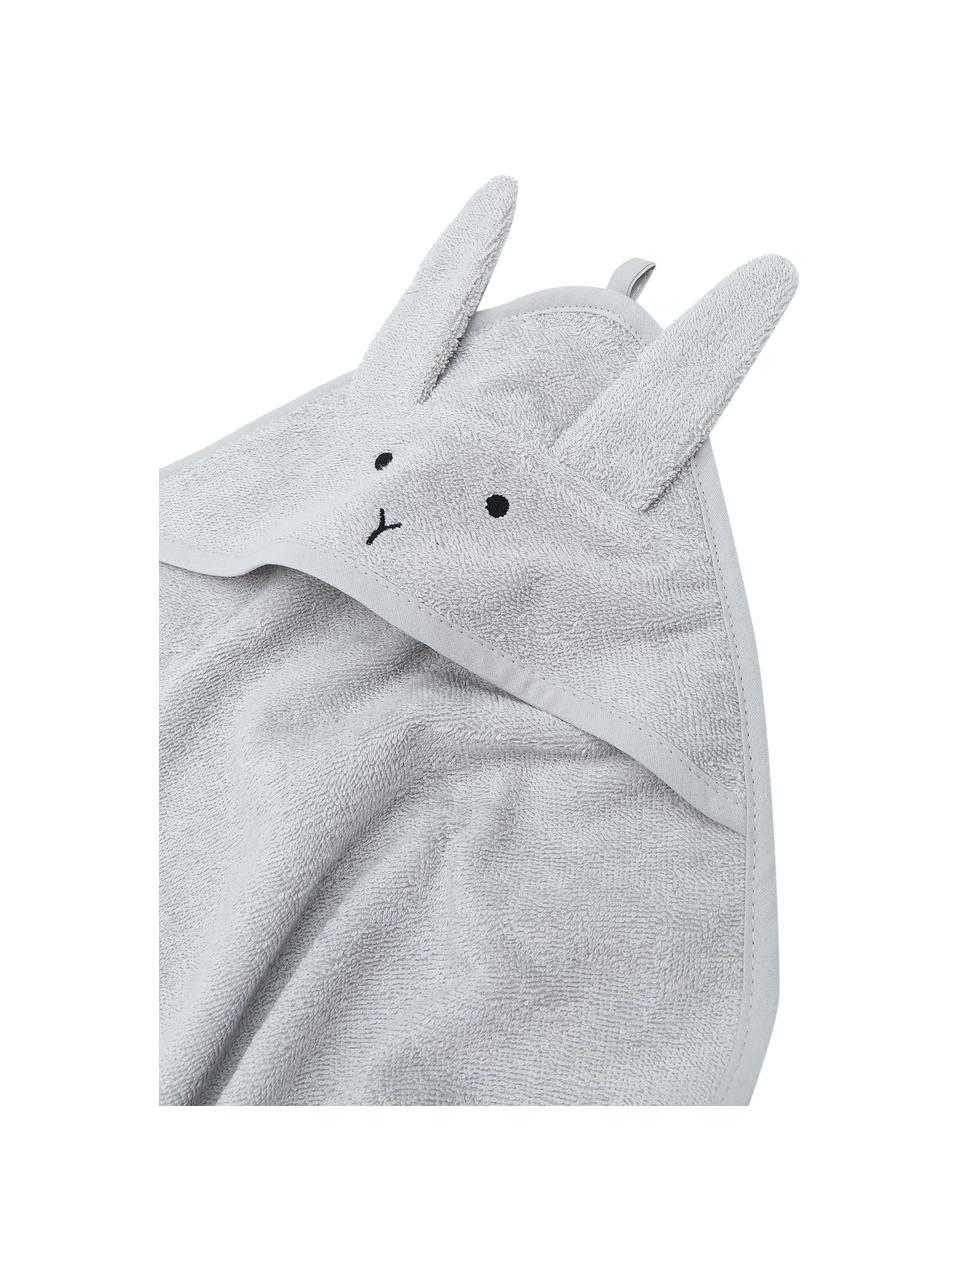 Ręcznik dla dzieci Albert Rabbit, 100% bawełna organiczna (frotte) z certyfikatem GOTS, Szary, S 70 x D 70 cm